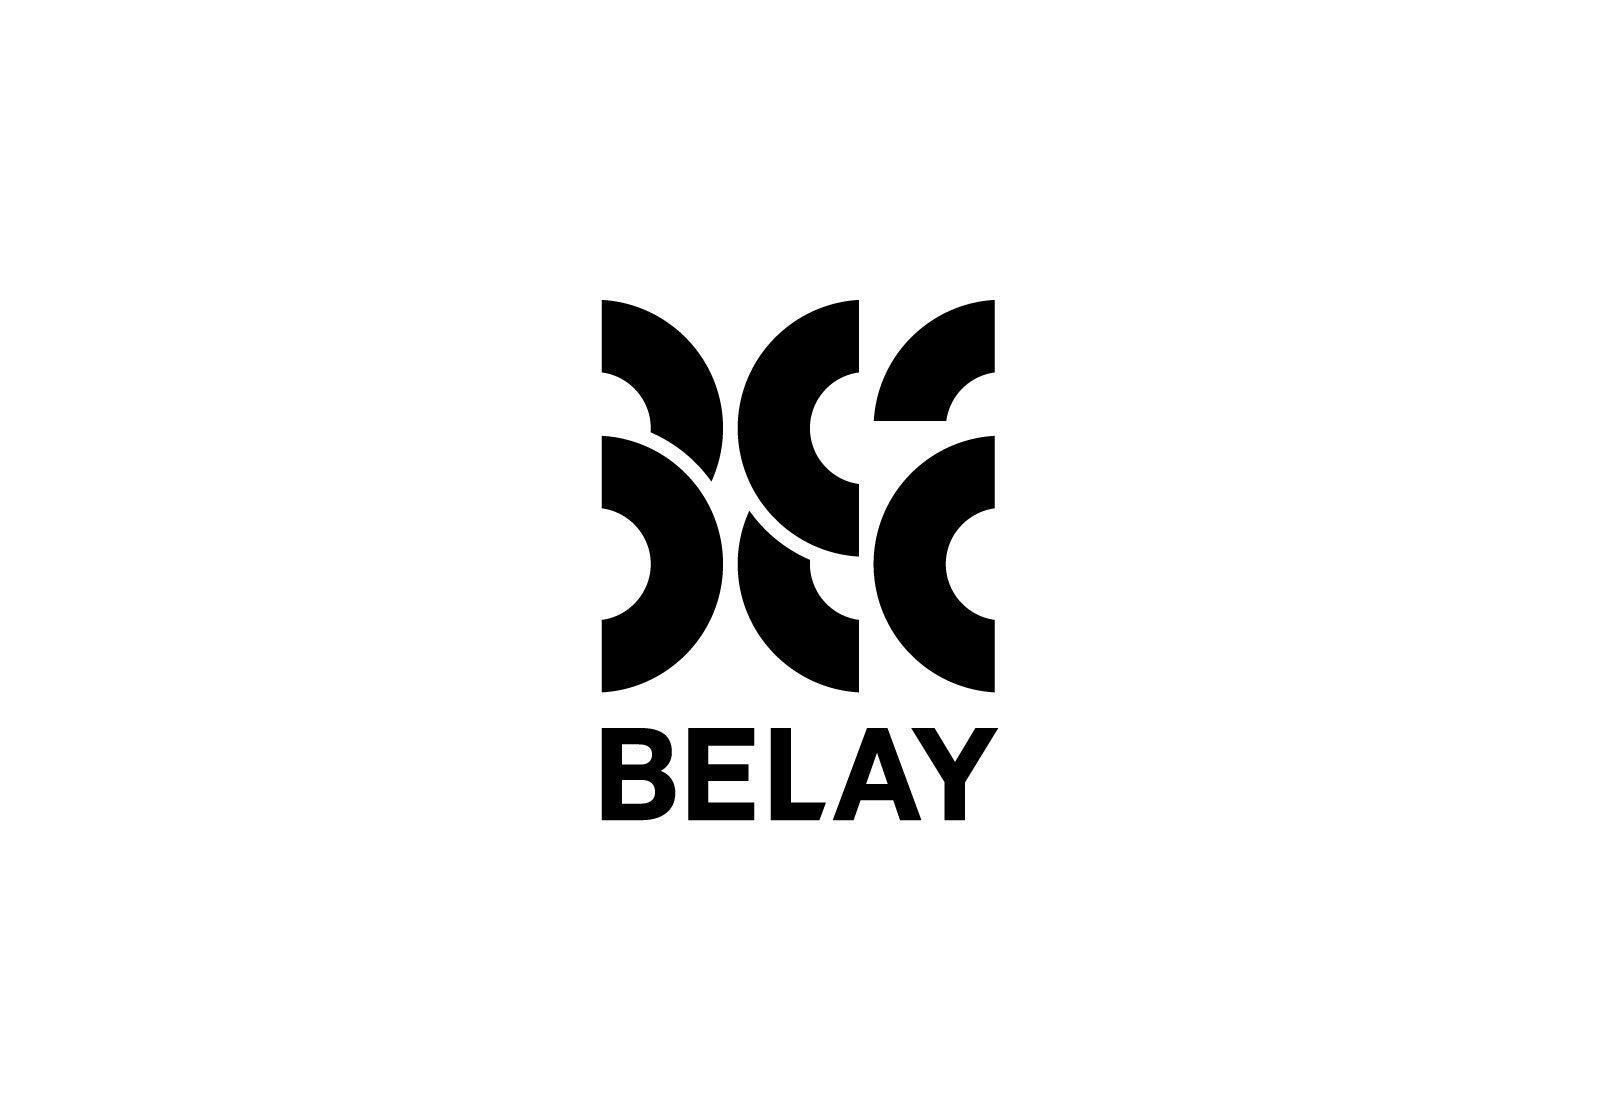 BELAY